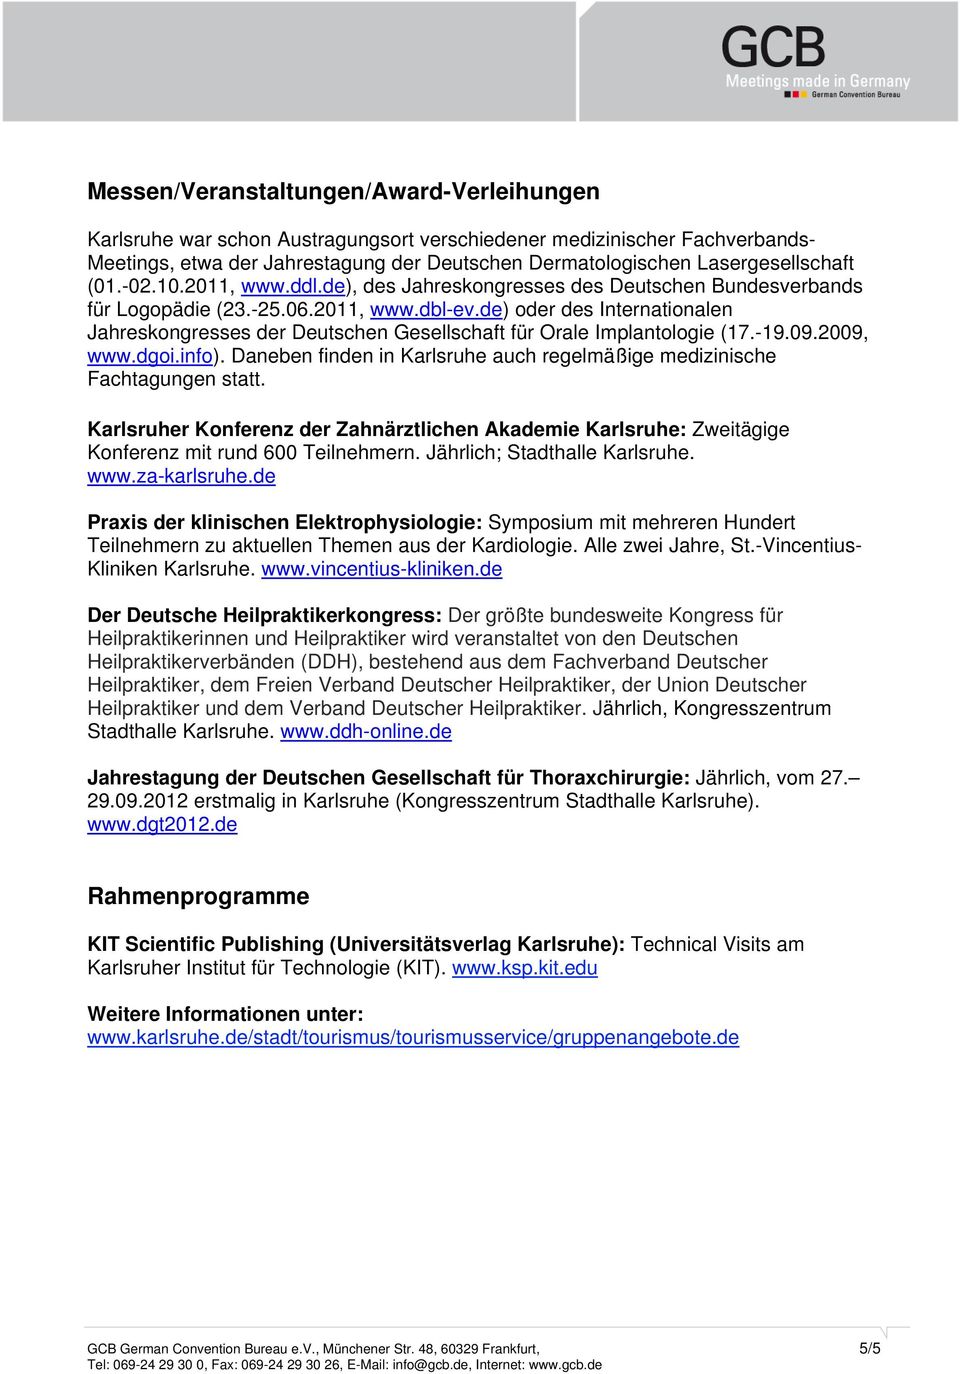 de) oder des Internationalen Jahreskongresses der Deutschen Gesellschaft für Orale Implantologie (17.-19.09.2009, www.dgoi.info).